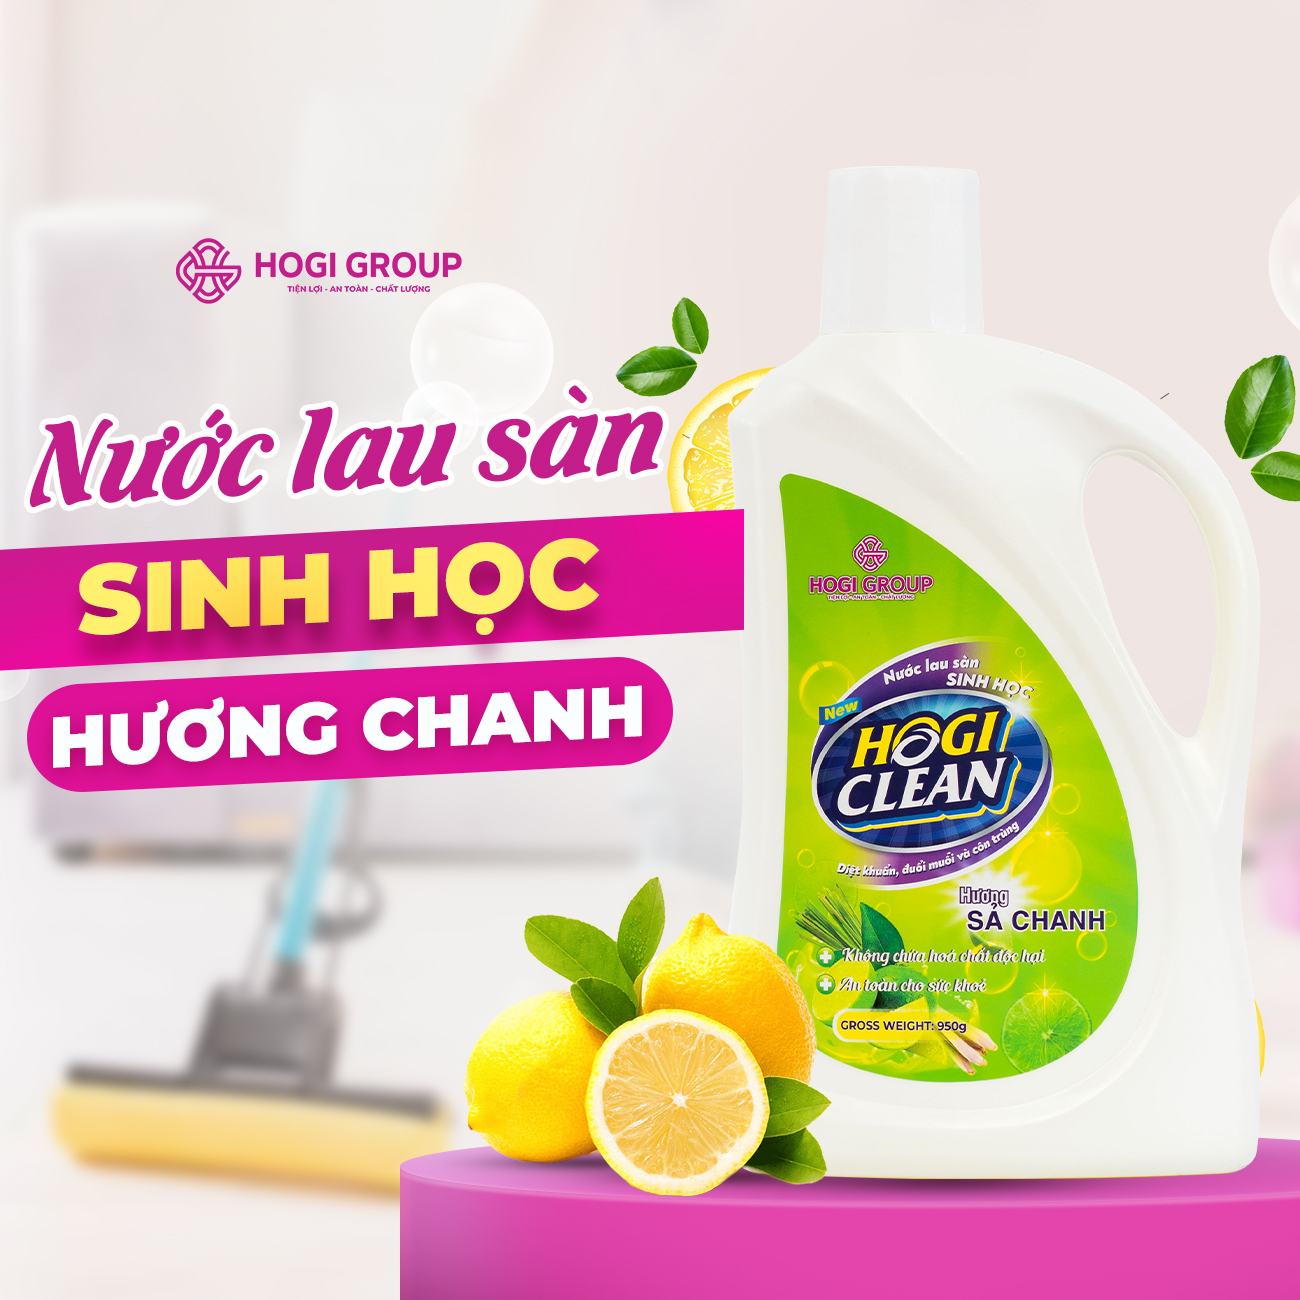 NƯỚC LAU SÀN SINH HỌC HOGI CLEAN 950ML - HƯƠNG SẢ CHANH